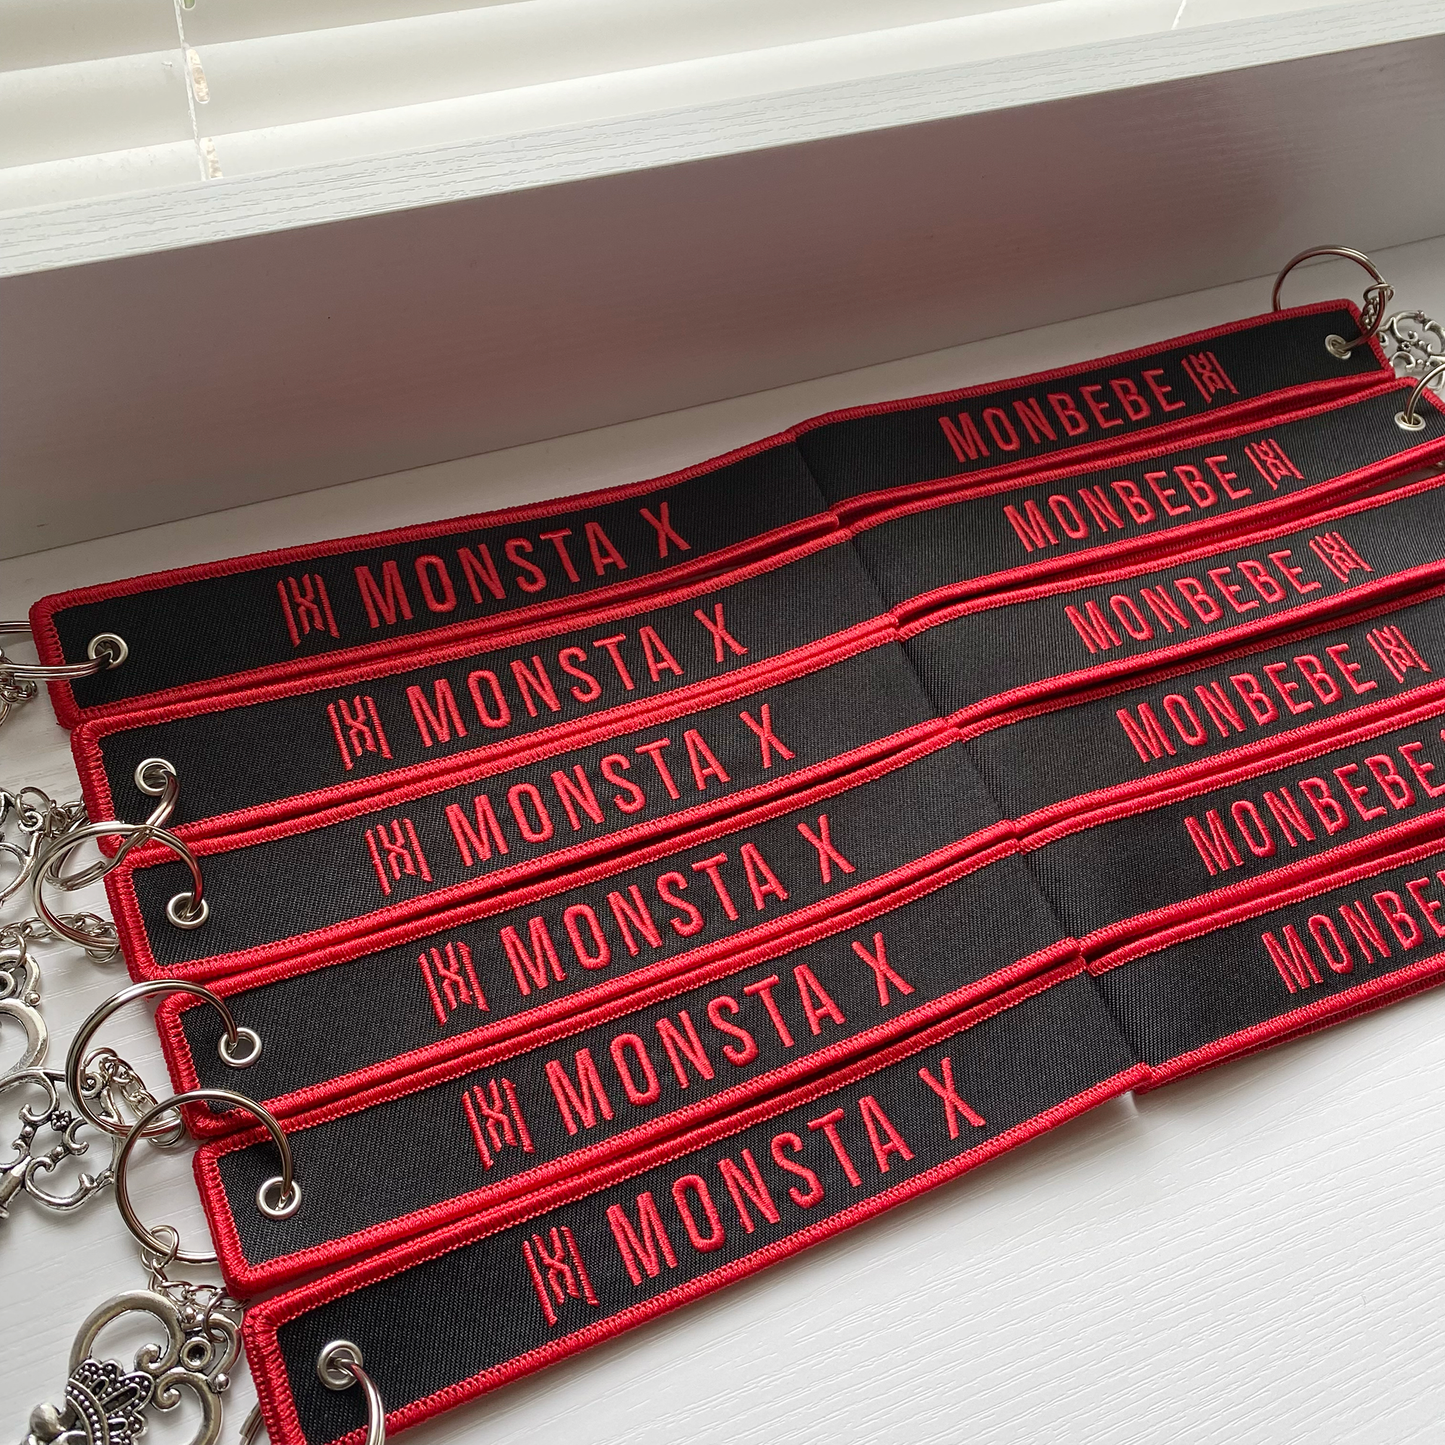 Monsta X - "Monbebe" Embroidered Keychain Wristlet